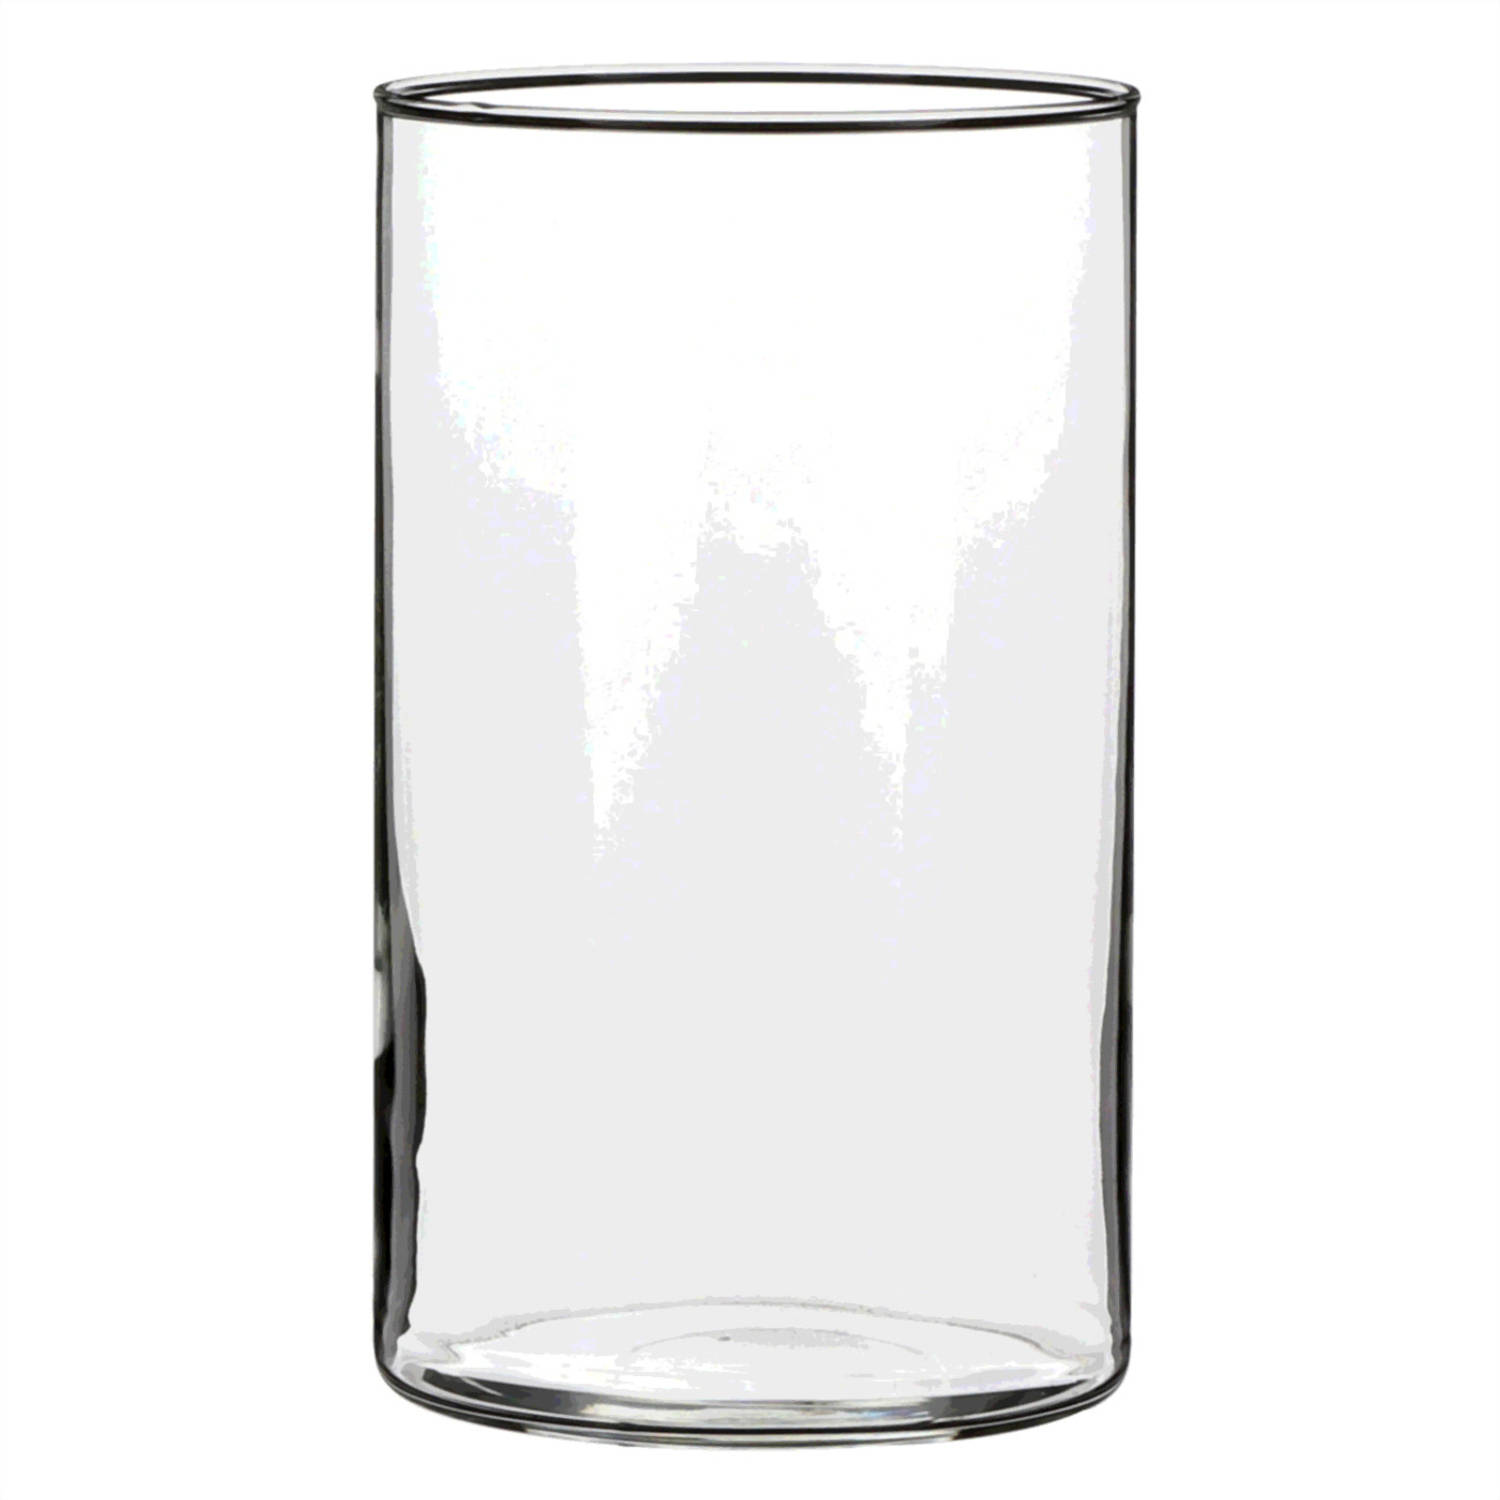 1x Ronde bloemen vaas/vazen van helder glas 20 cm - Voor verse of kunst bloemen en boeketten - Glazen vazen transparant